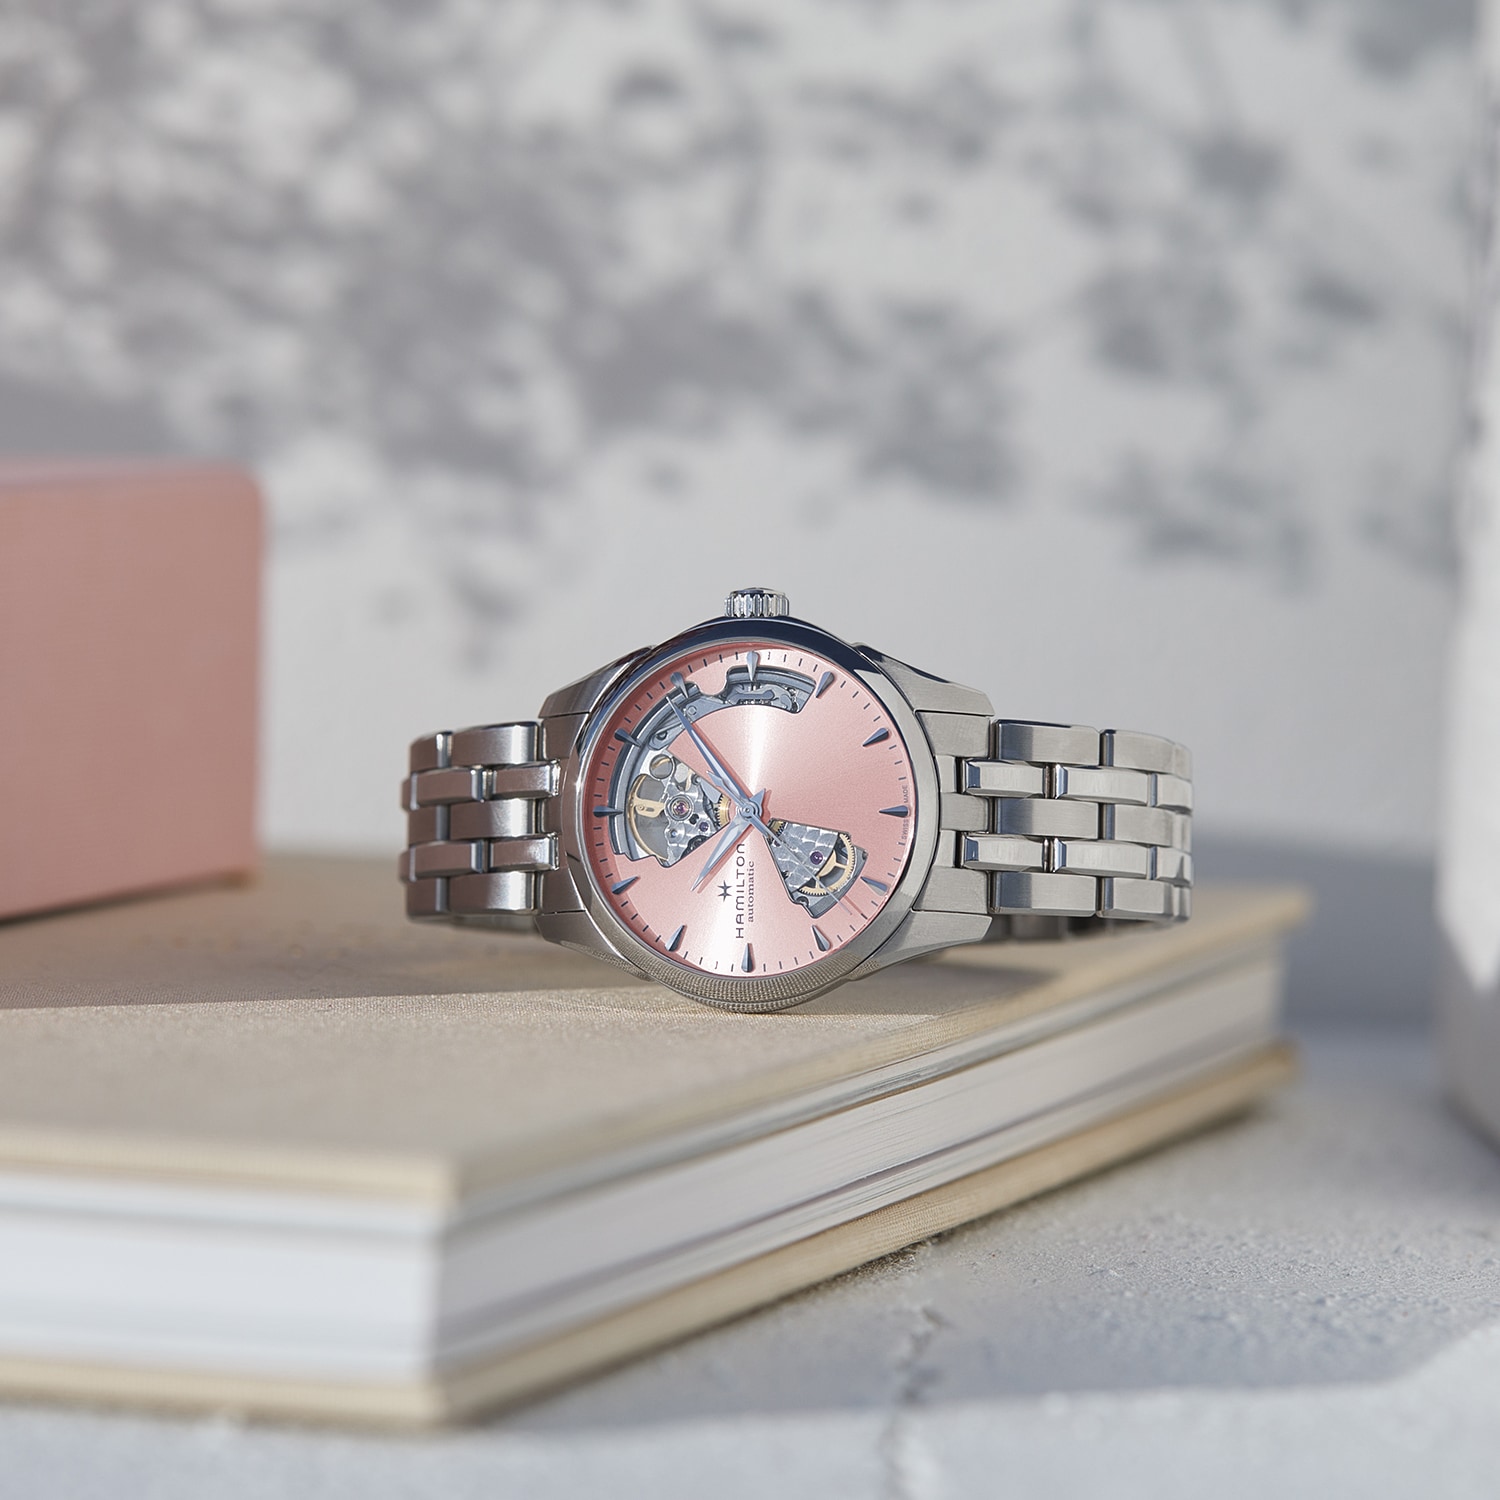 Een fris begin met onze roze horloges in lentestijl